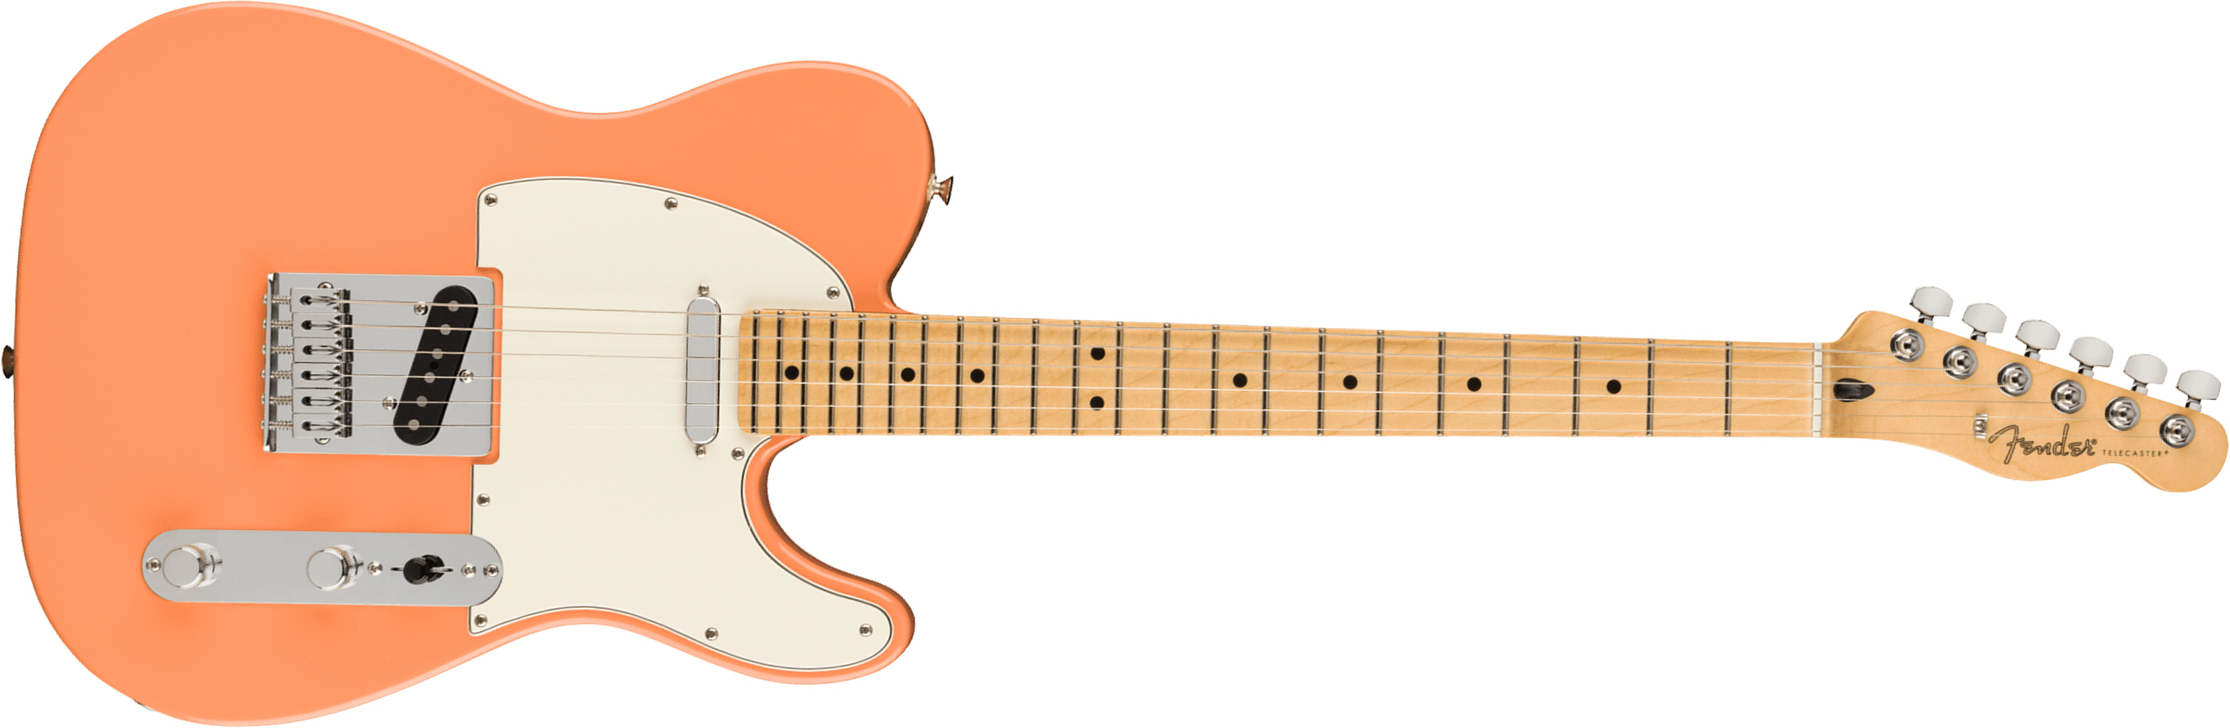 Fender Tele Player Ltd Mex 2s Ht Mn - Pacific Peach - E-Gitarre in Teleform - Main picture